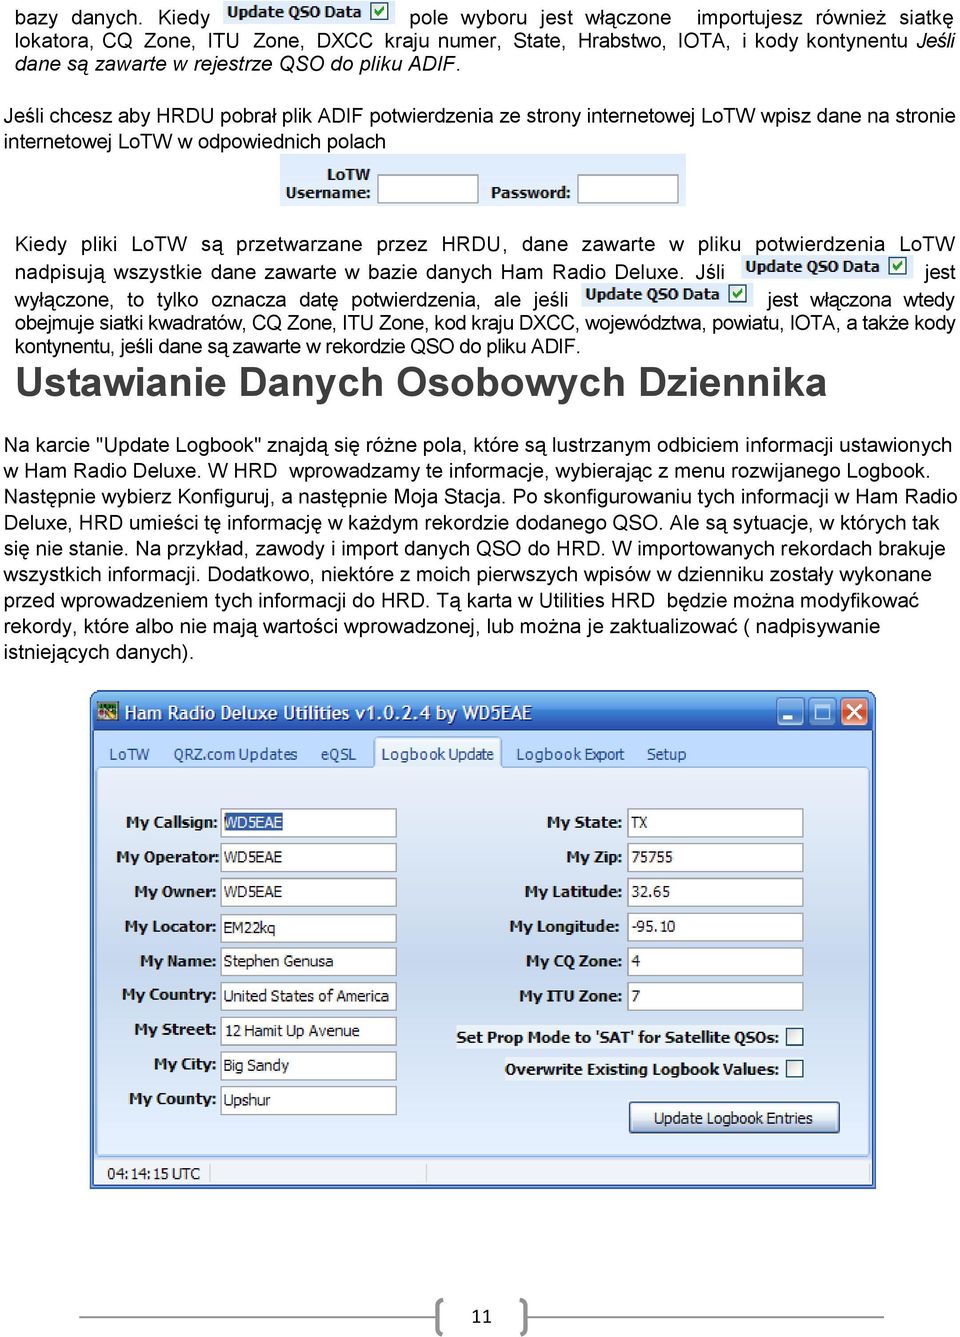 Jeśli chcesz aby HRDU pobrał plik ADIF potwierdzenia ze strony internetowej LoTW wpisz dane na stronie internetowej LoTW w odpowiednich polach Kiedy pliki LoTW są przetwarzane przez HRDU, dane